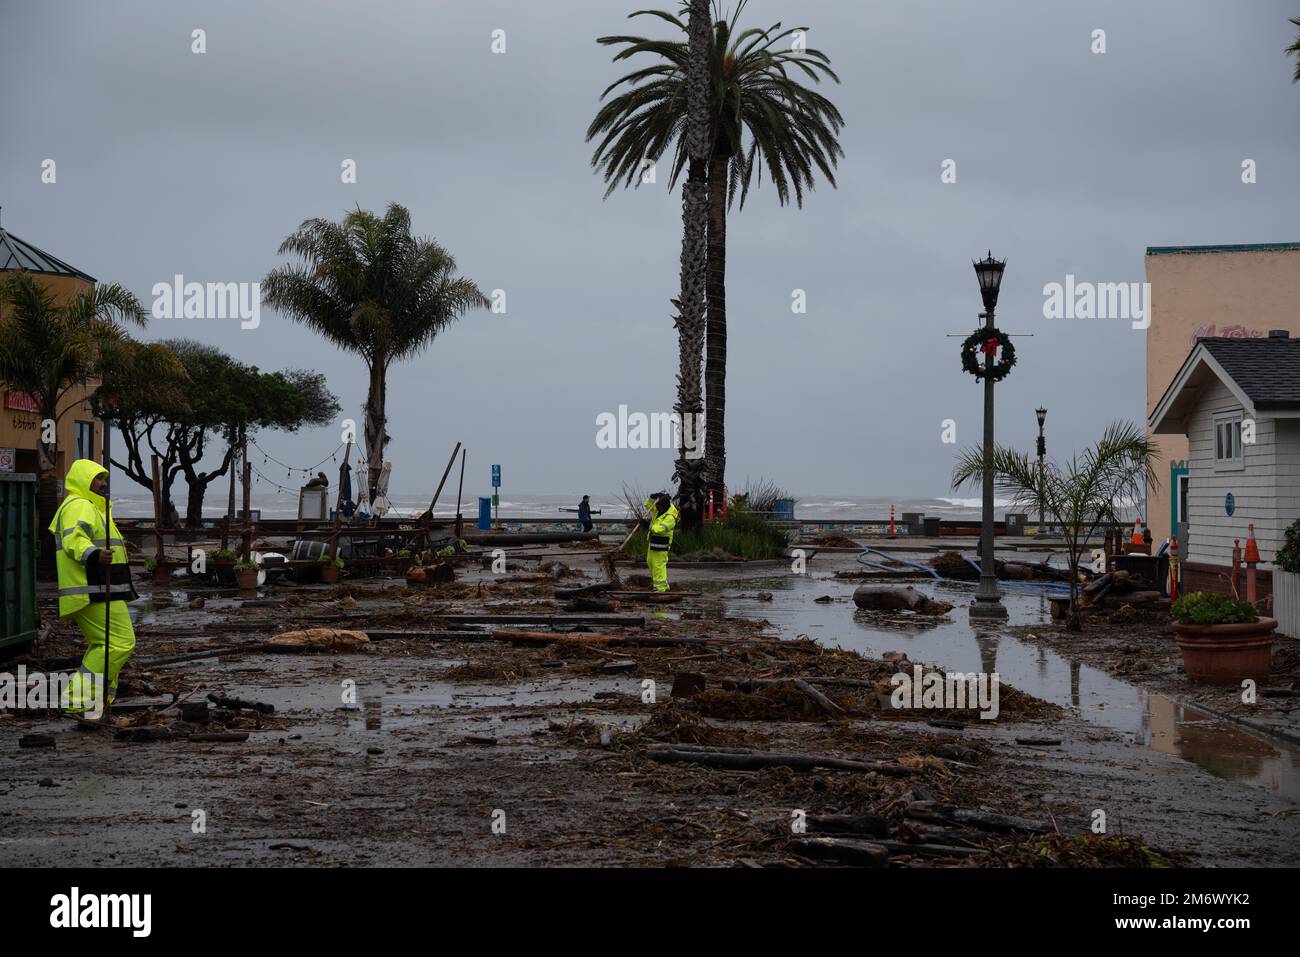 Le cyclone de la bombe provoque une tempête grave en Californie avec de graves dommages causés par des inondations à Capitola, en Californie, aux États-Unis, sur le 5 janvier 2023; la tempête tue 2 personnes. Pier est évacué, pie Banque D'Images